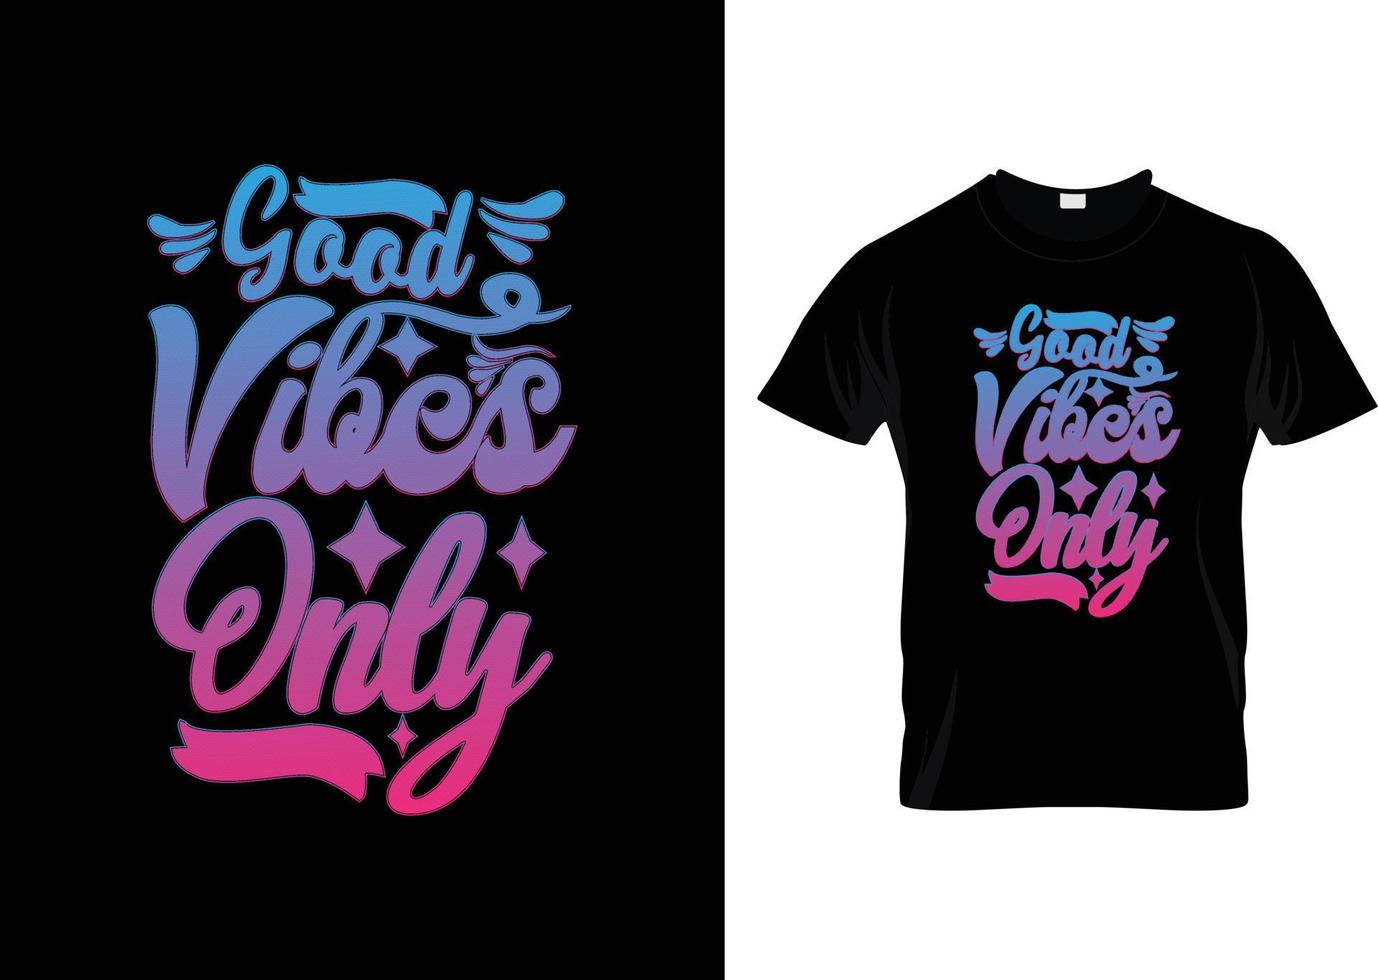 creatieve typografie ontwerpsjabloon, goede vibes citaten t-shirt typografie vector